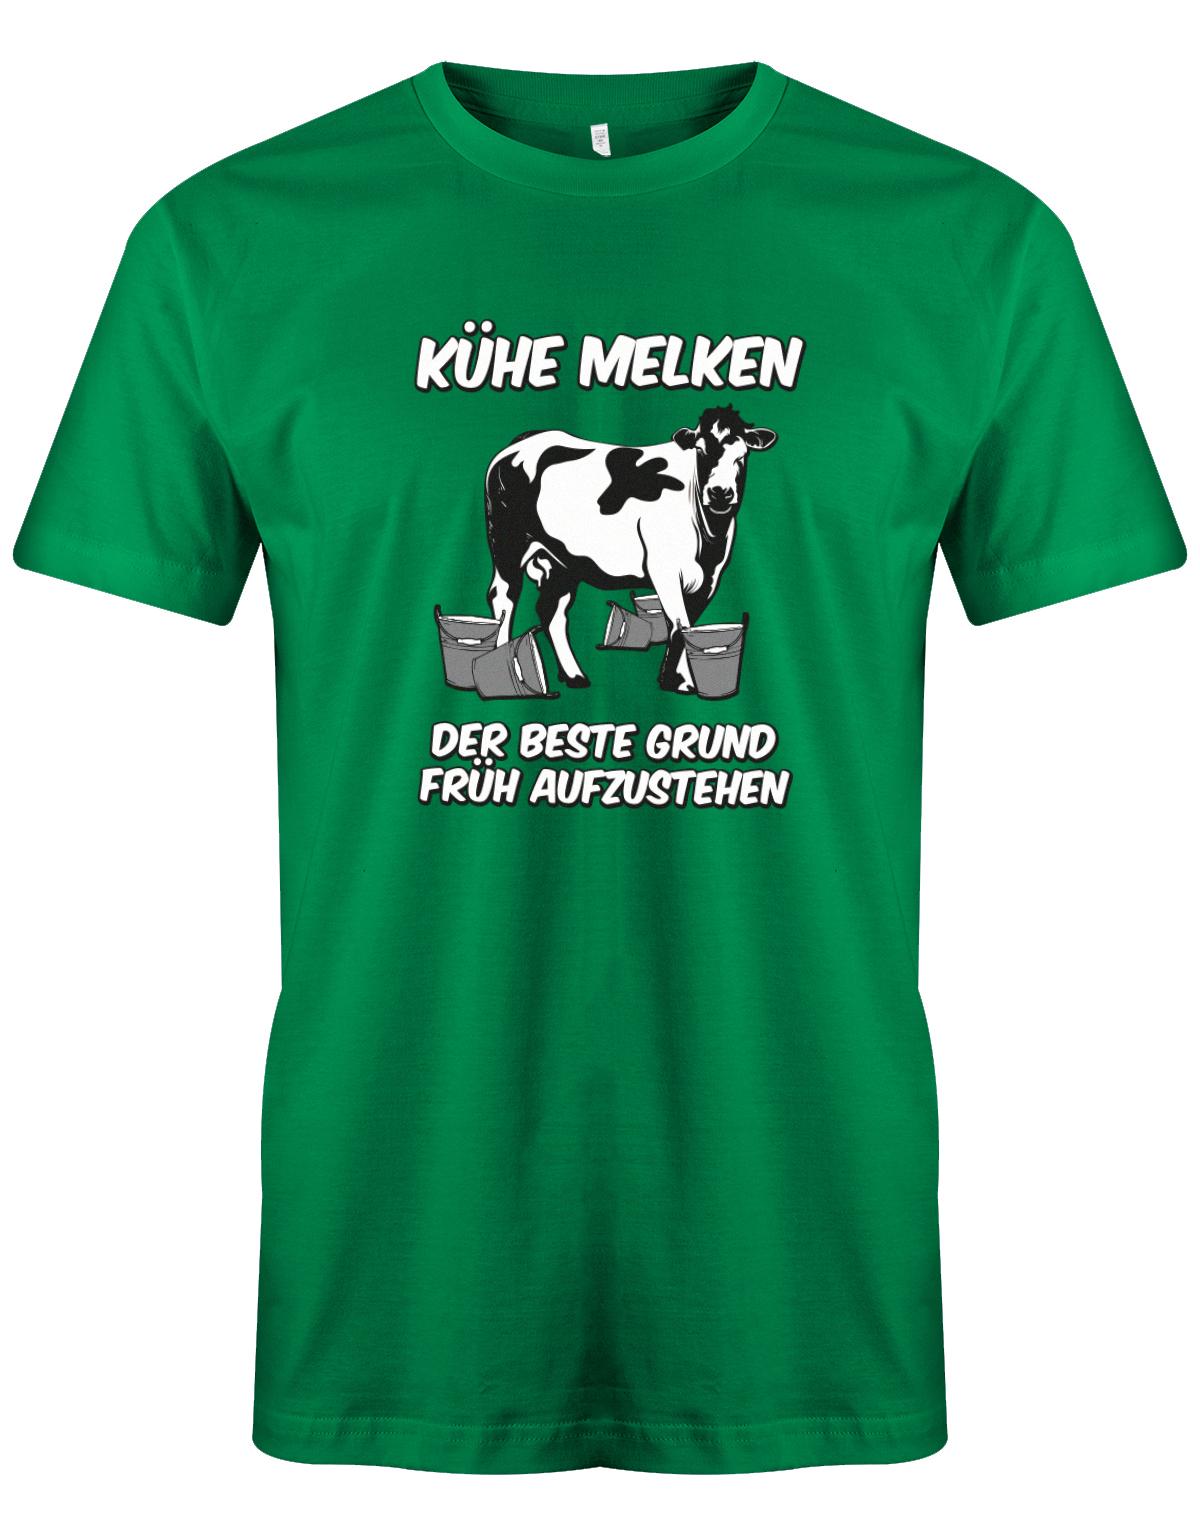 Landwirtschaft Shirt Männer. Kühe melken der beste Grund früh aufzustehen. Grün